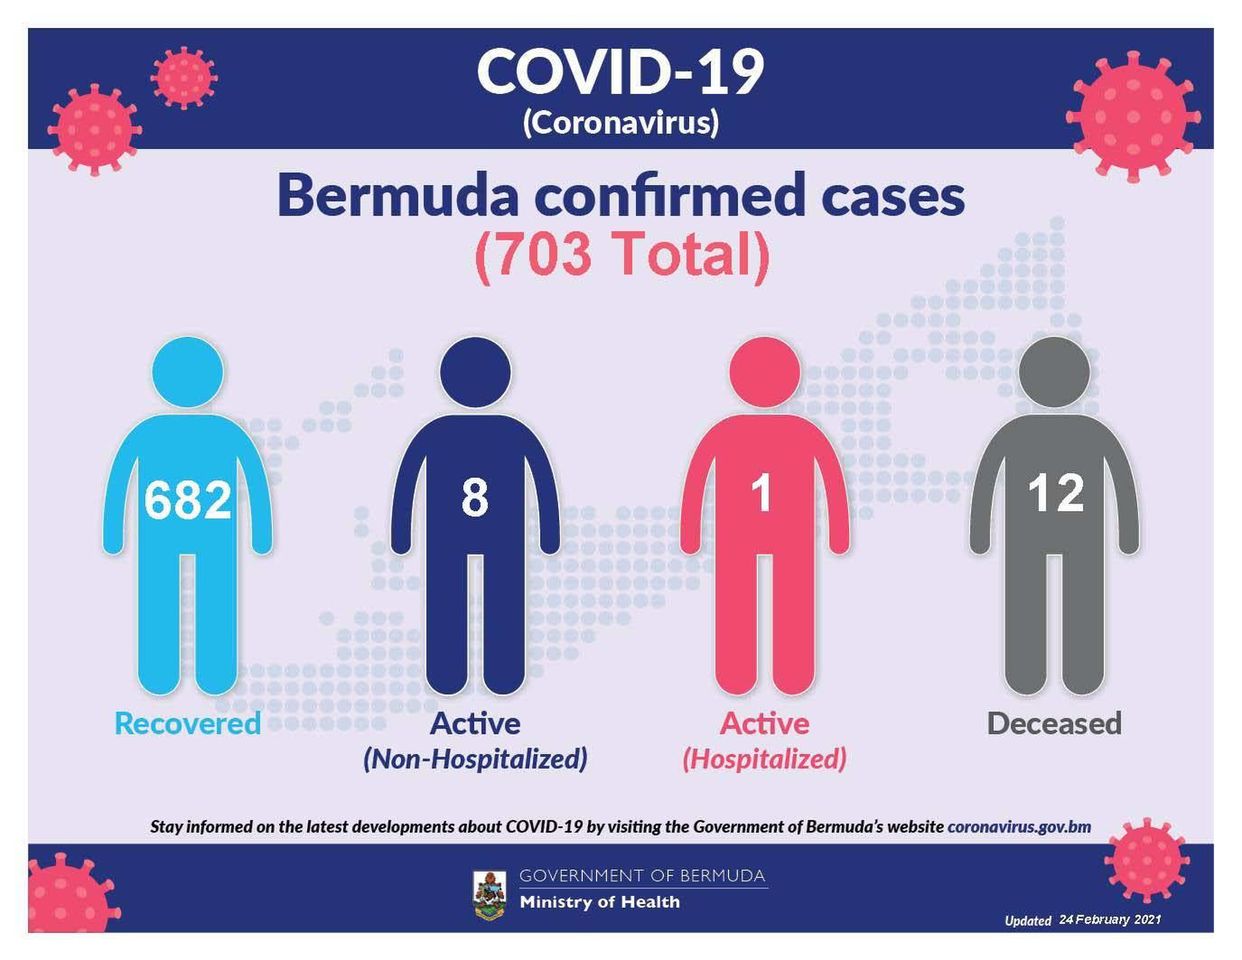 No new COVID-19 cases reported in Bermuda, 24 February 2021